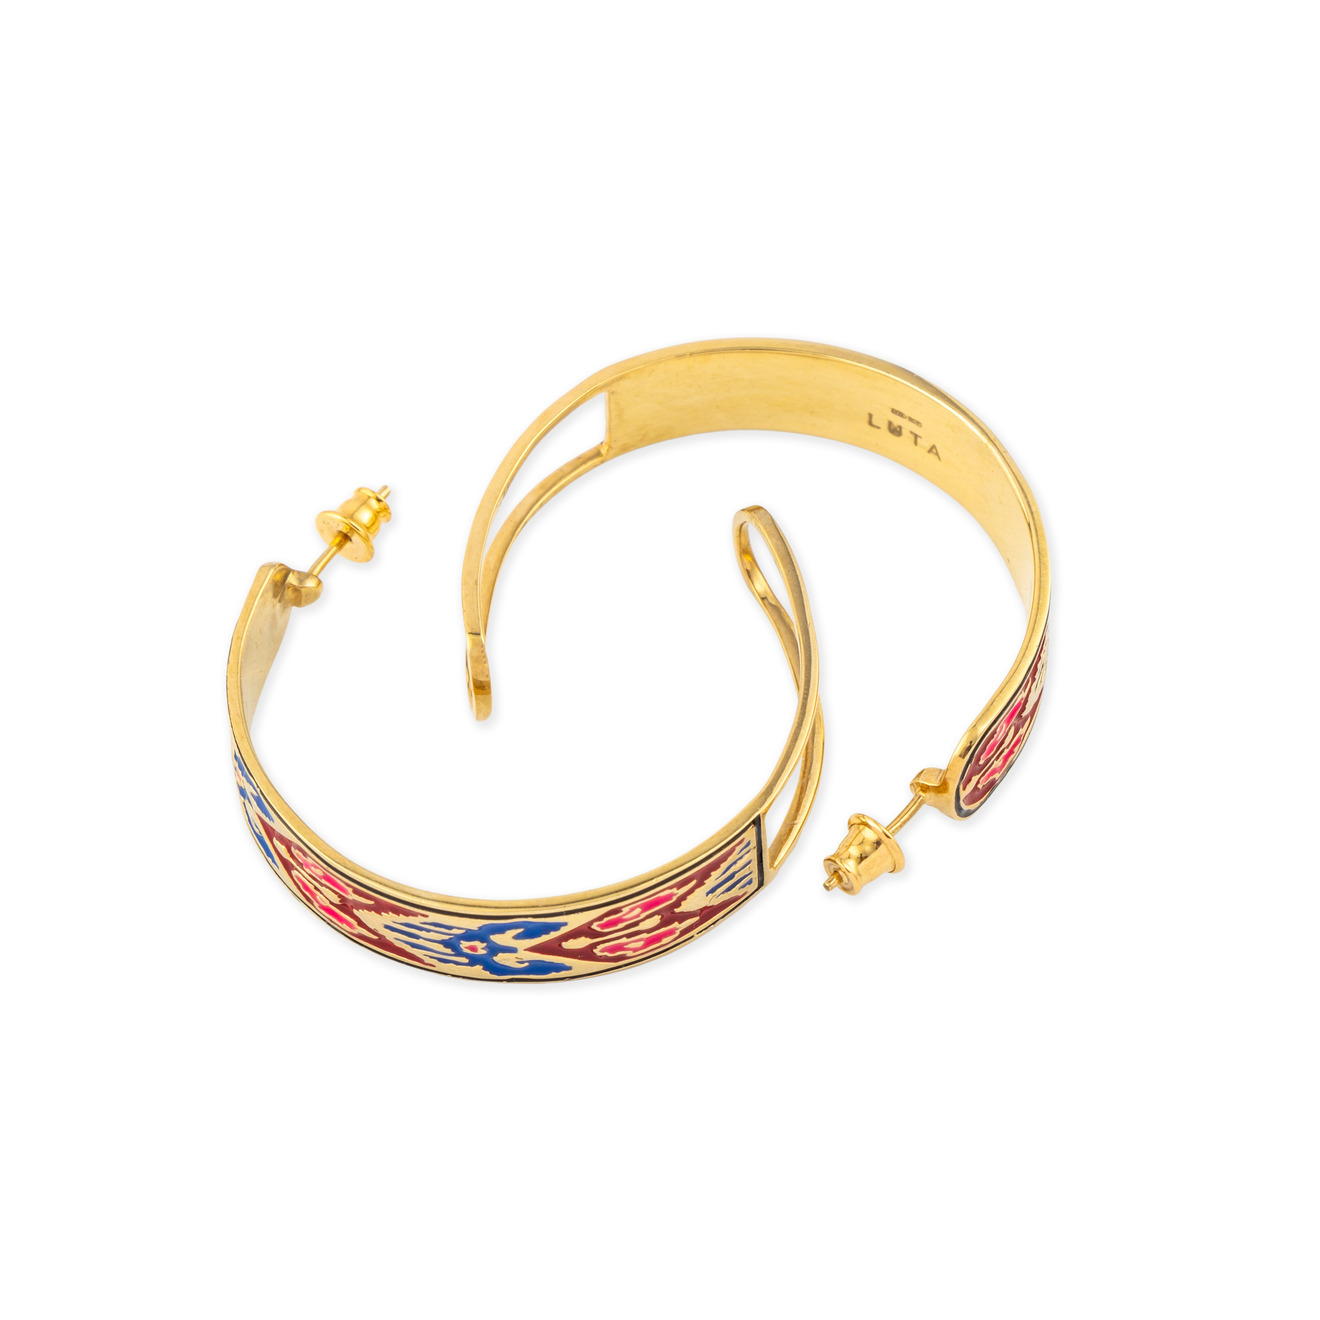 LUTA Jewelry Серебряные серьги-хупы Марокко с позолотой, розовой и синей эмалью luta jewelry серебряное кольцо марокко с бирюзовой эмалью и позолотой